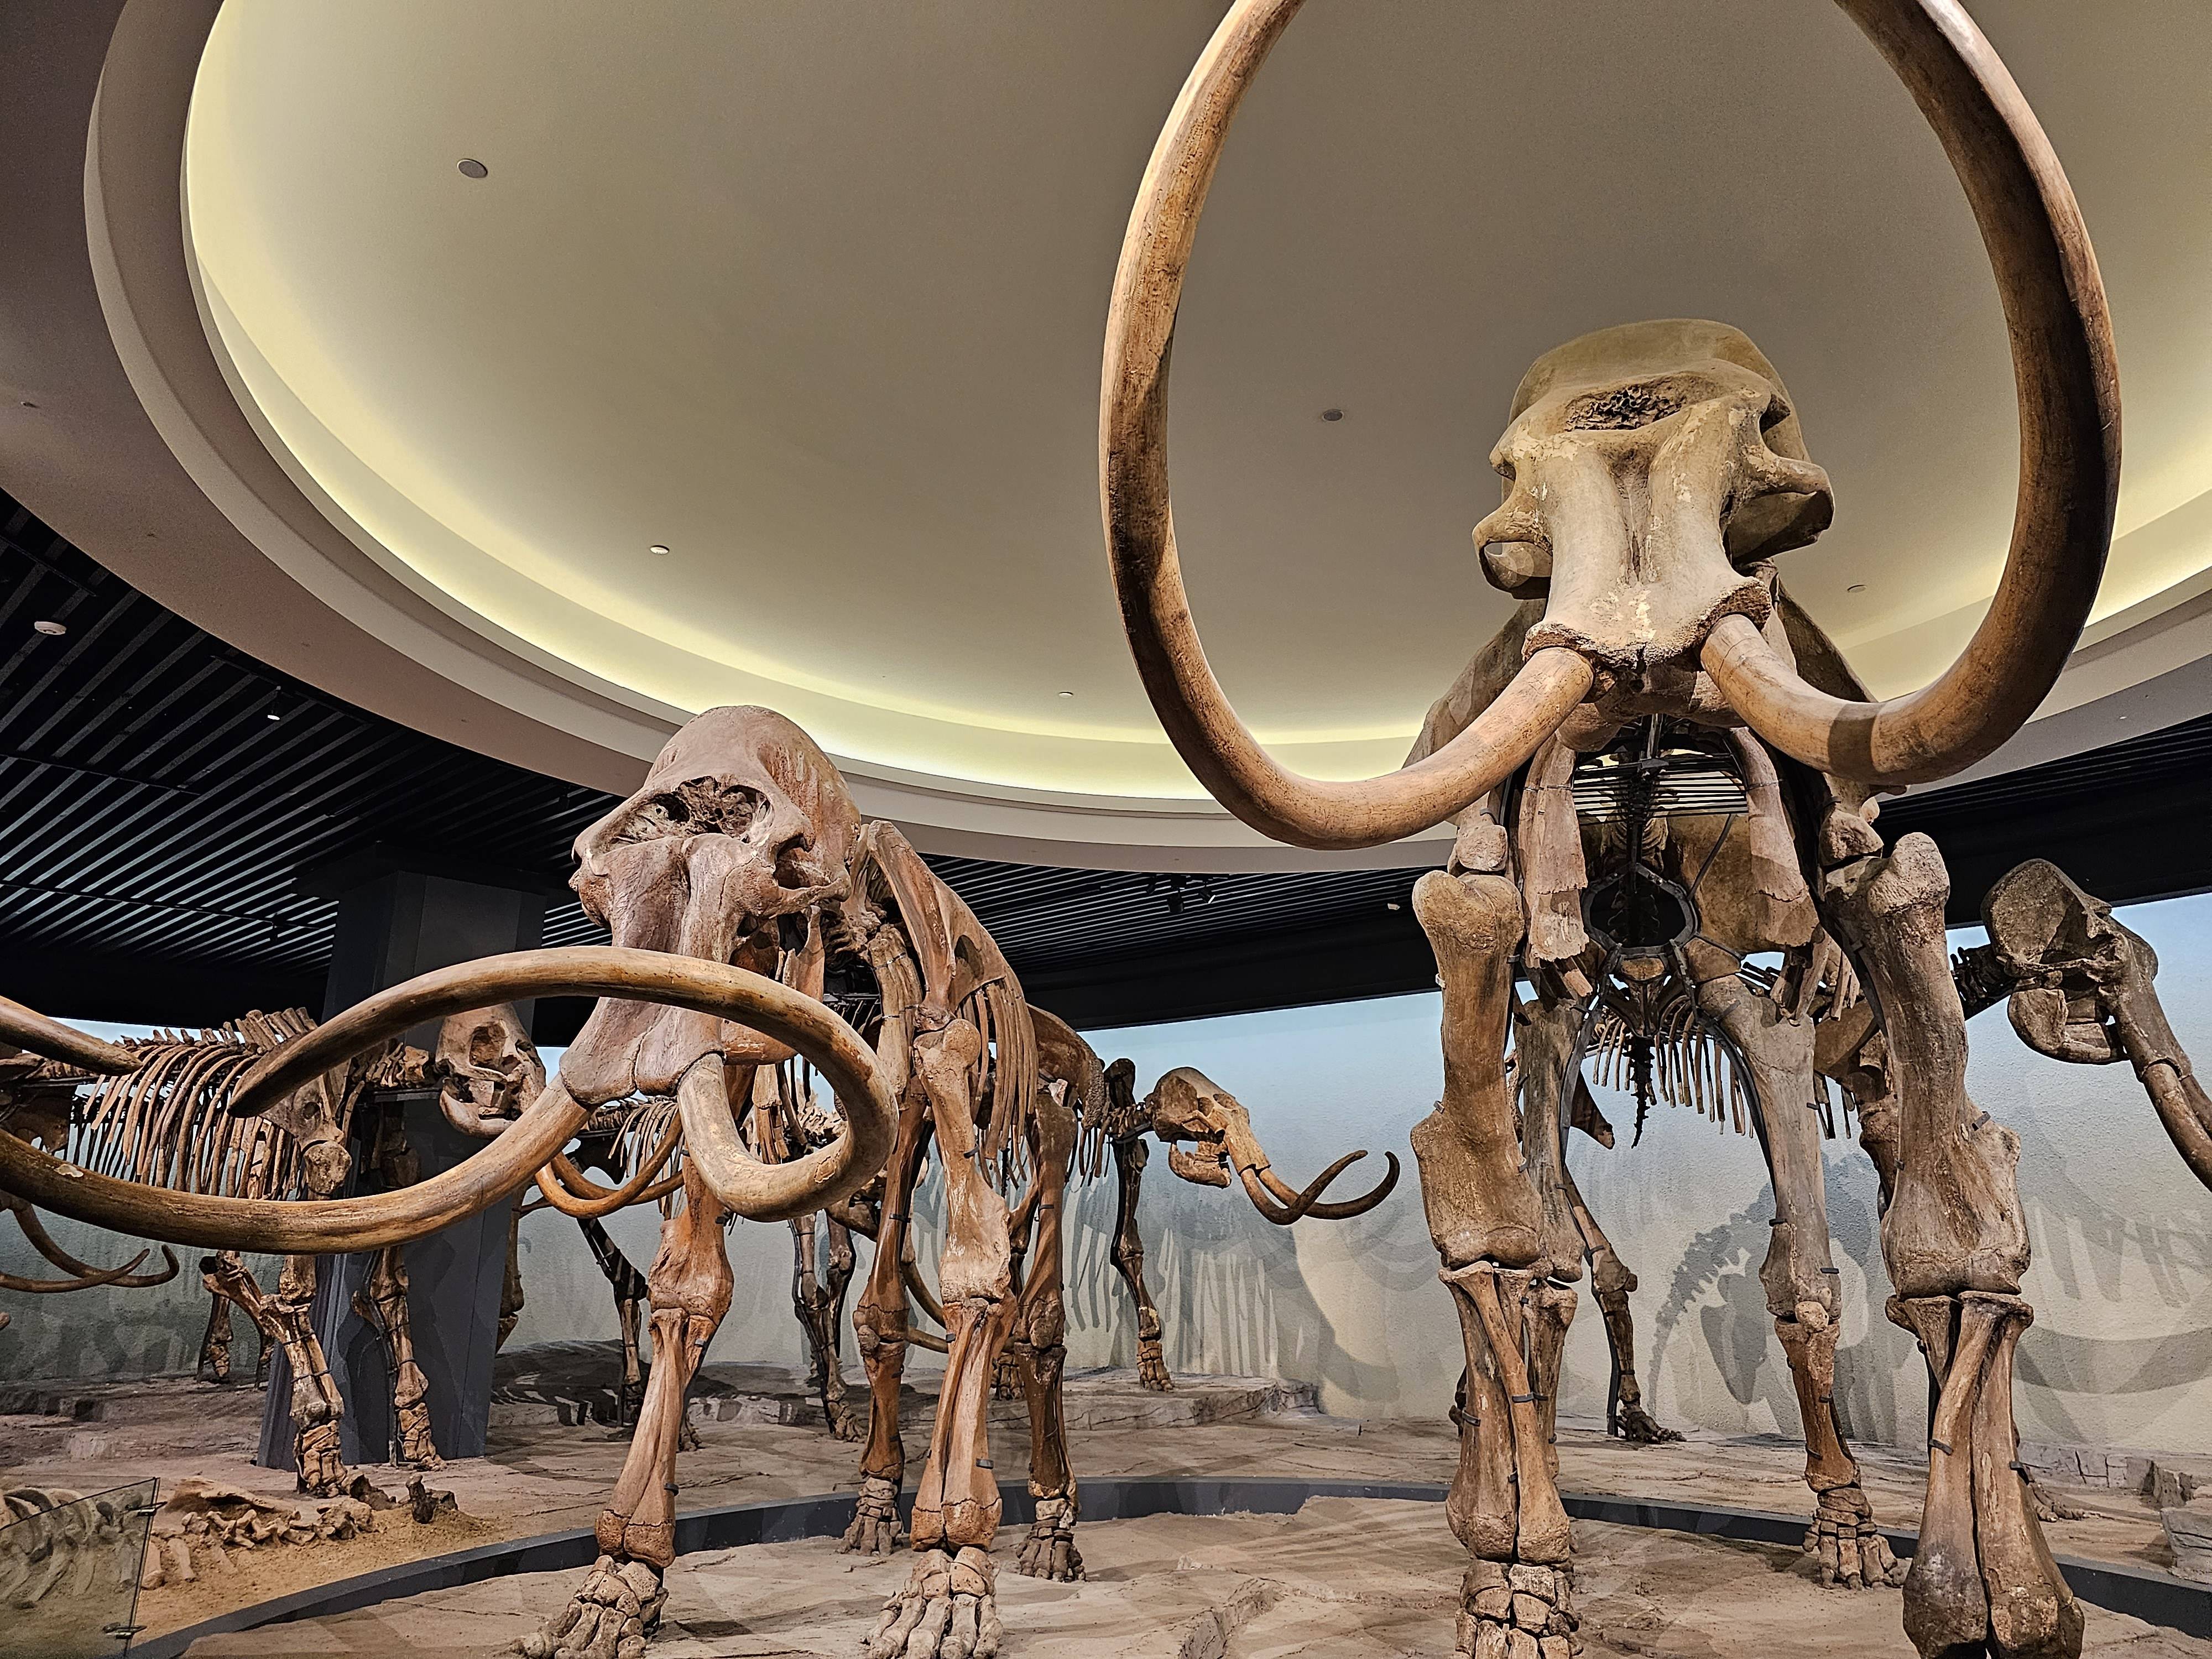 大庆市博物馆展出的猛犸象化石